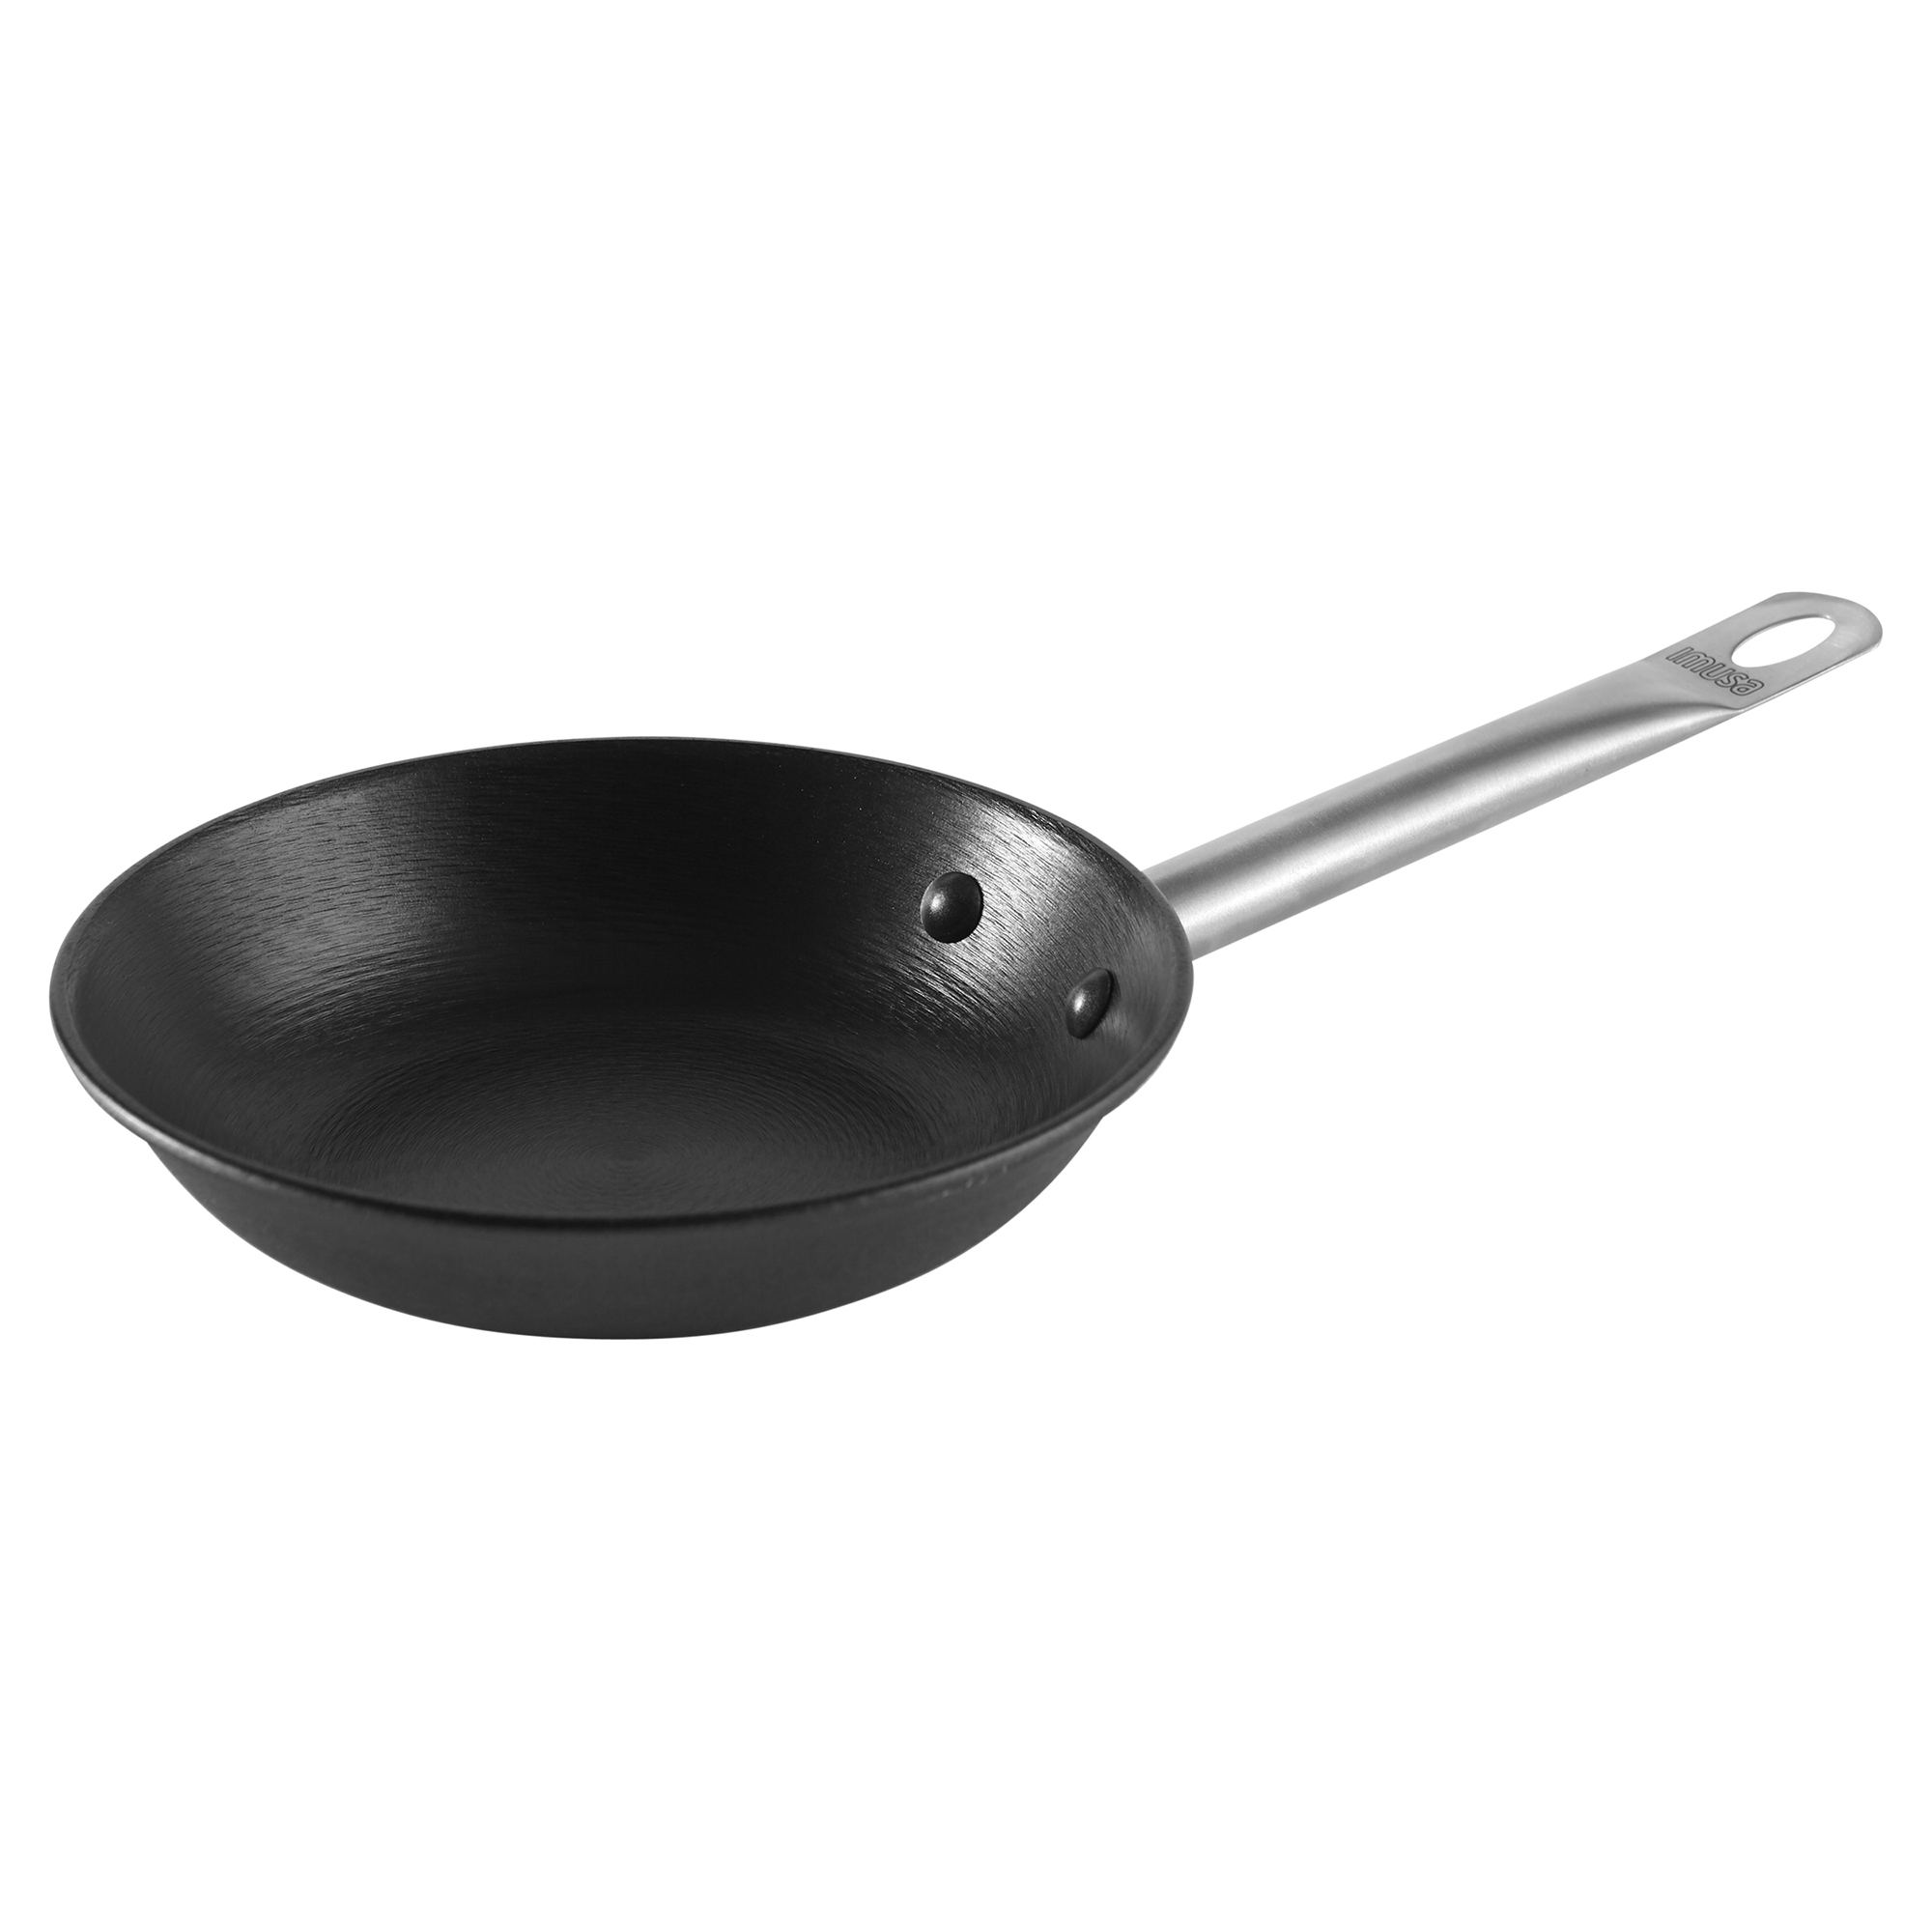 IMUSA USA Paella Pan with Metal Handle, 15-Inch, Black